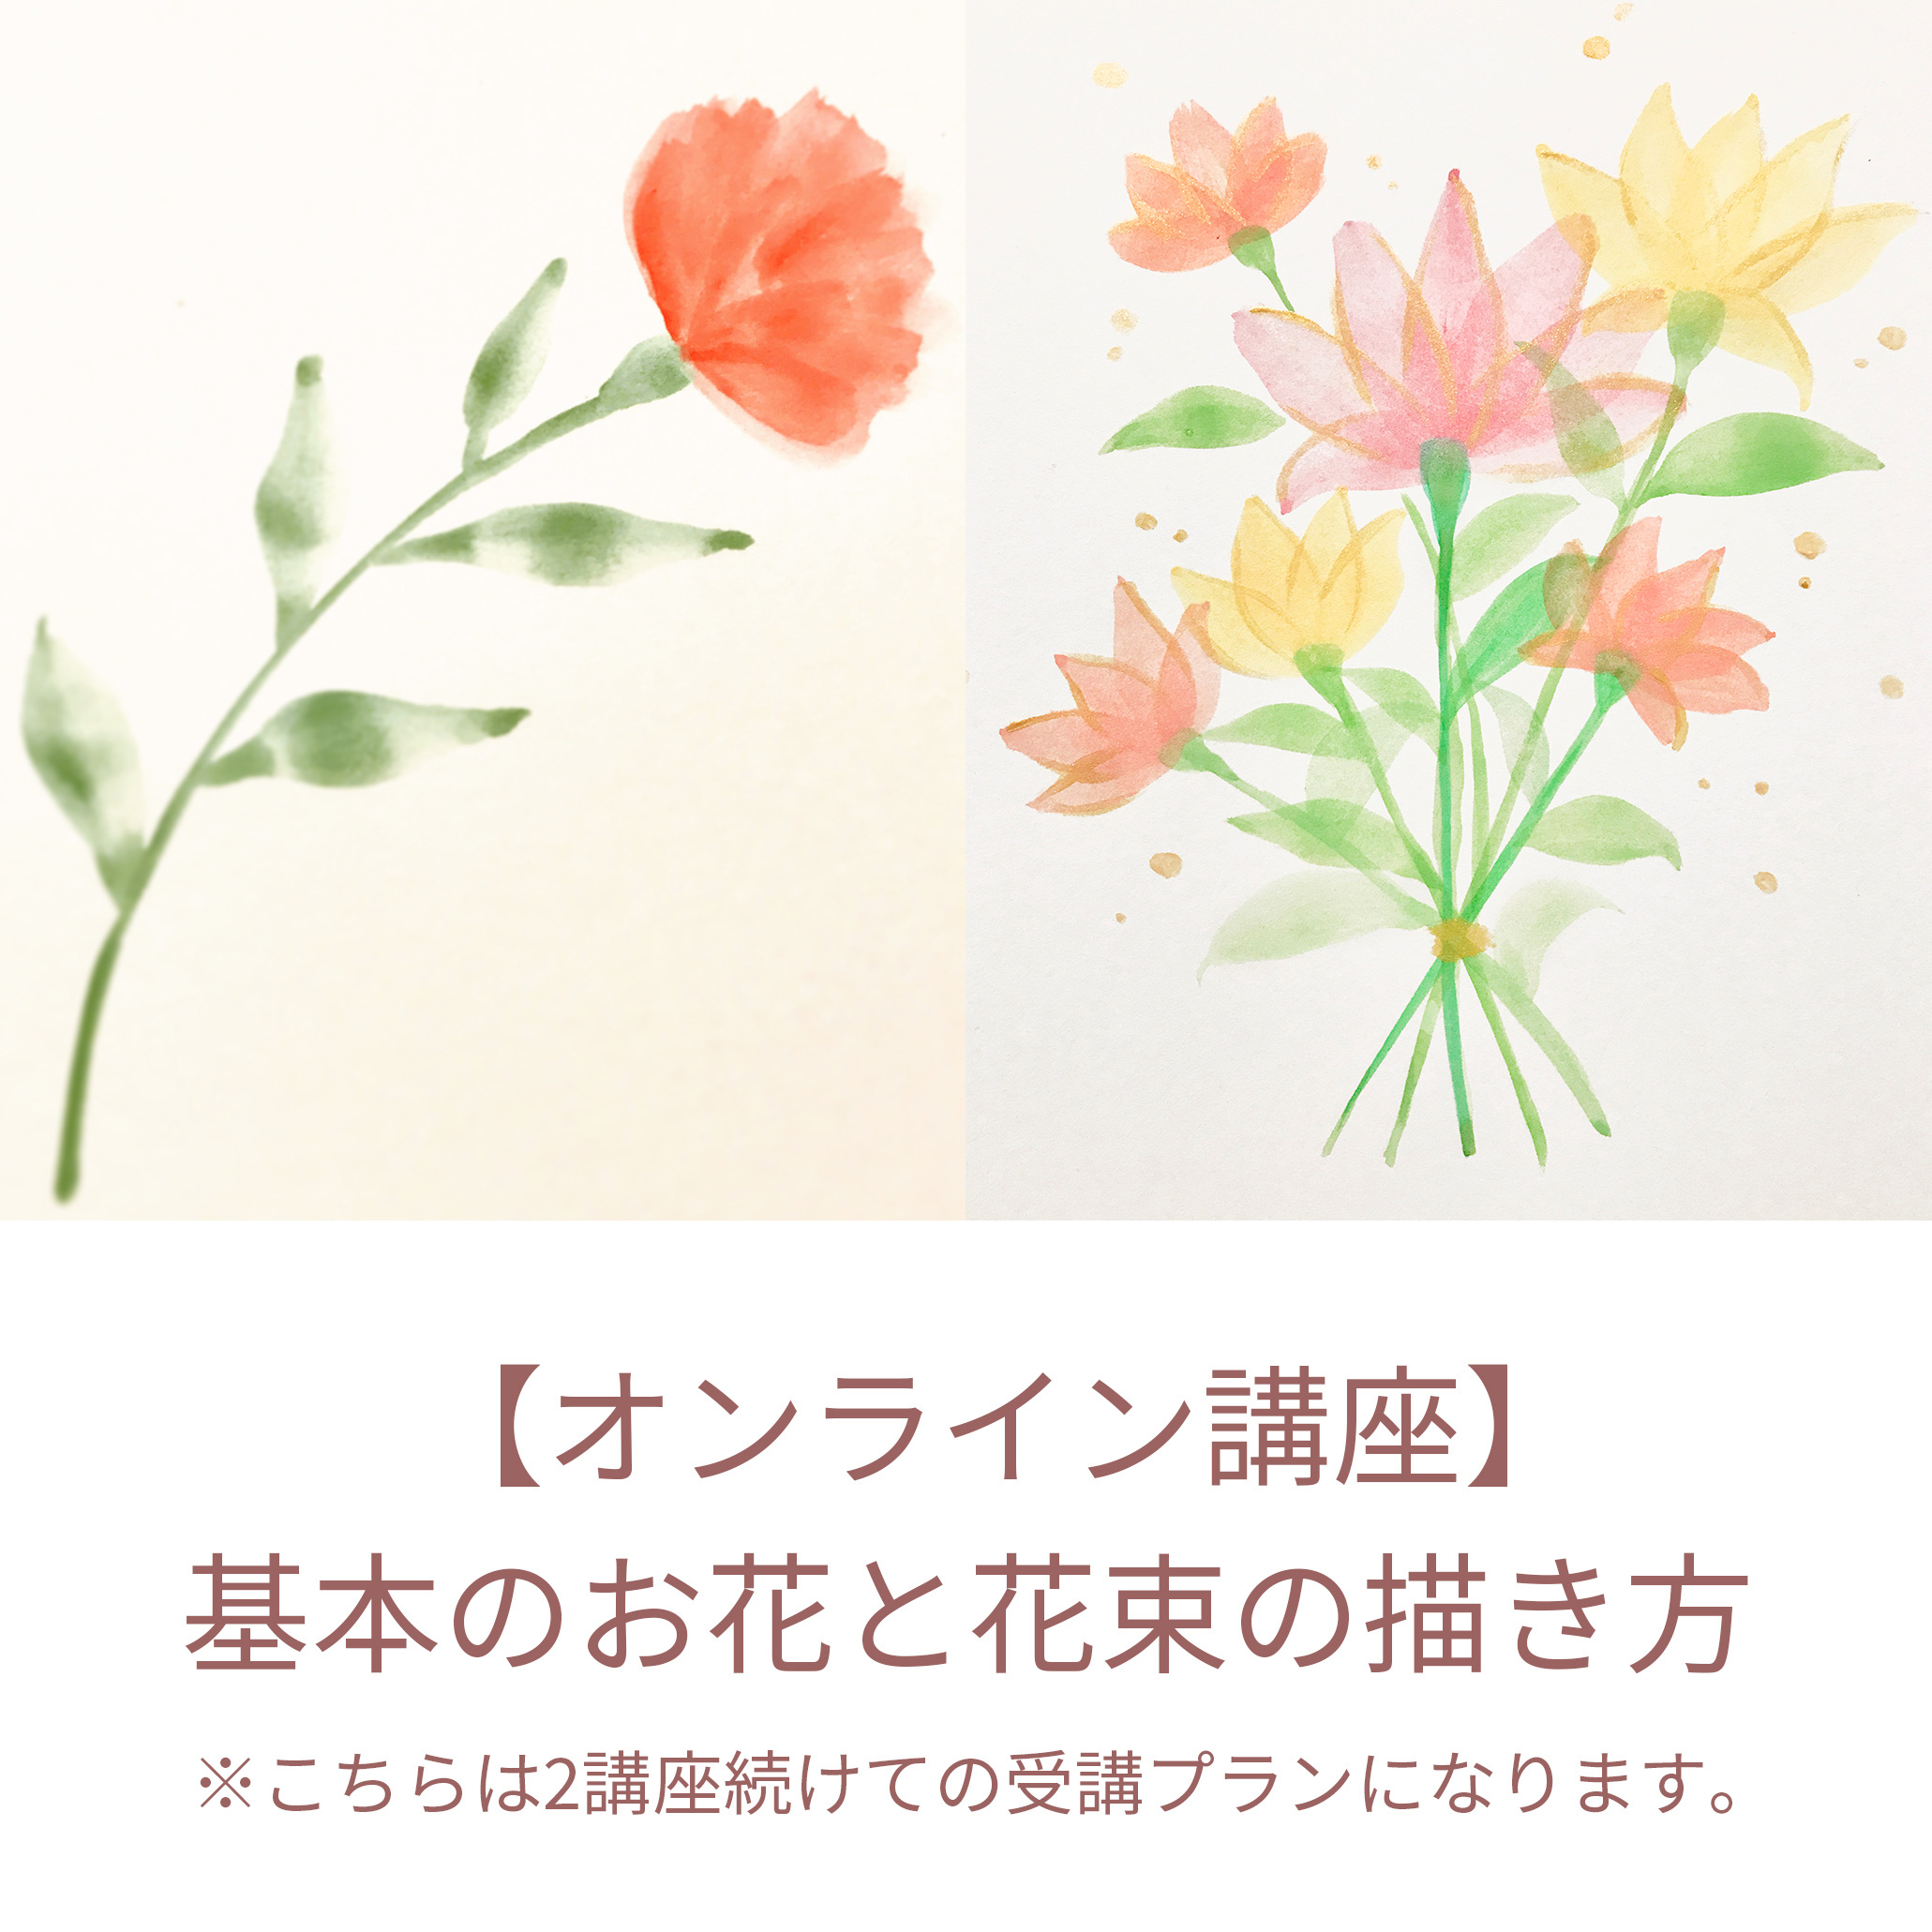 【オンライン講座】基本の葉っぱとお花と花束の描き方の写真1枚目